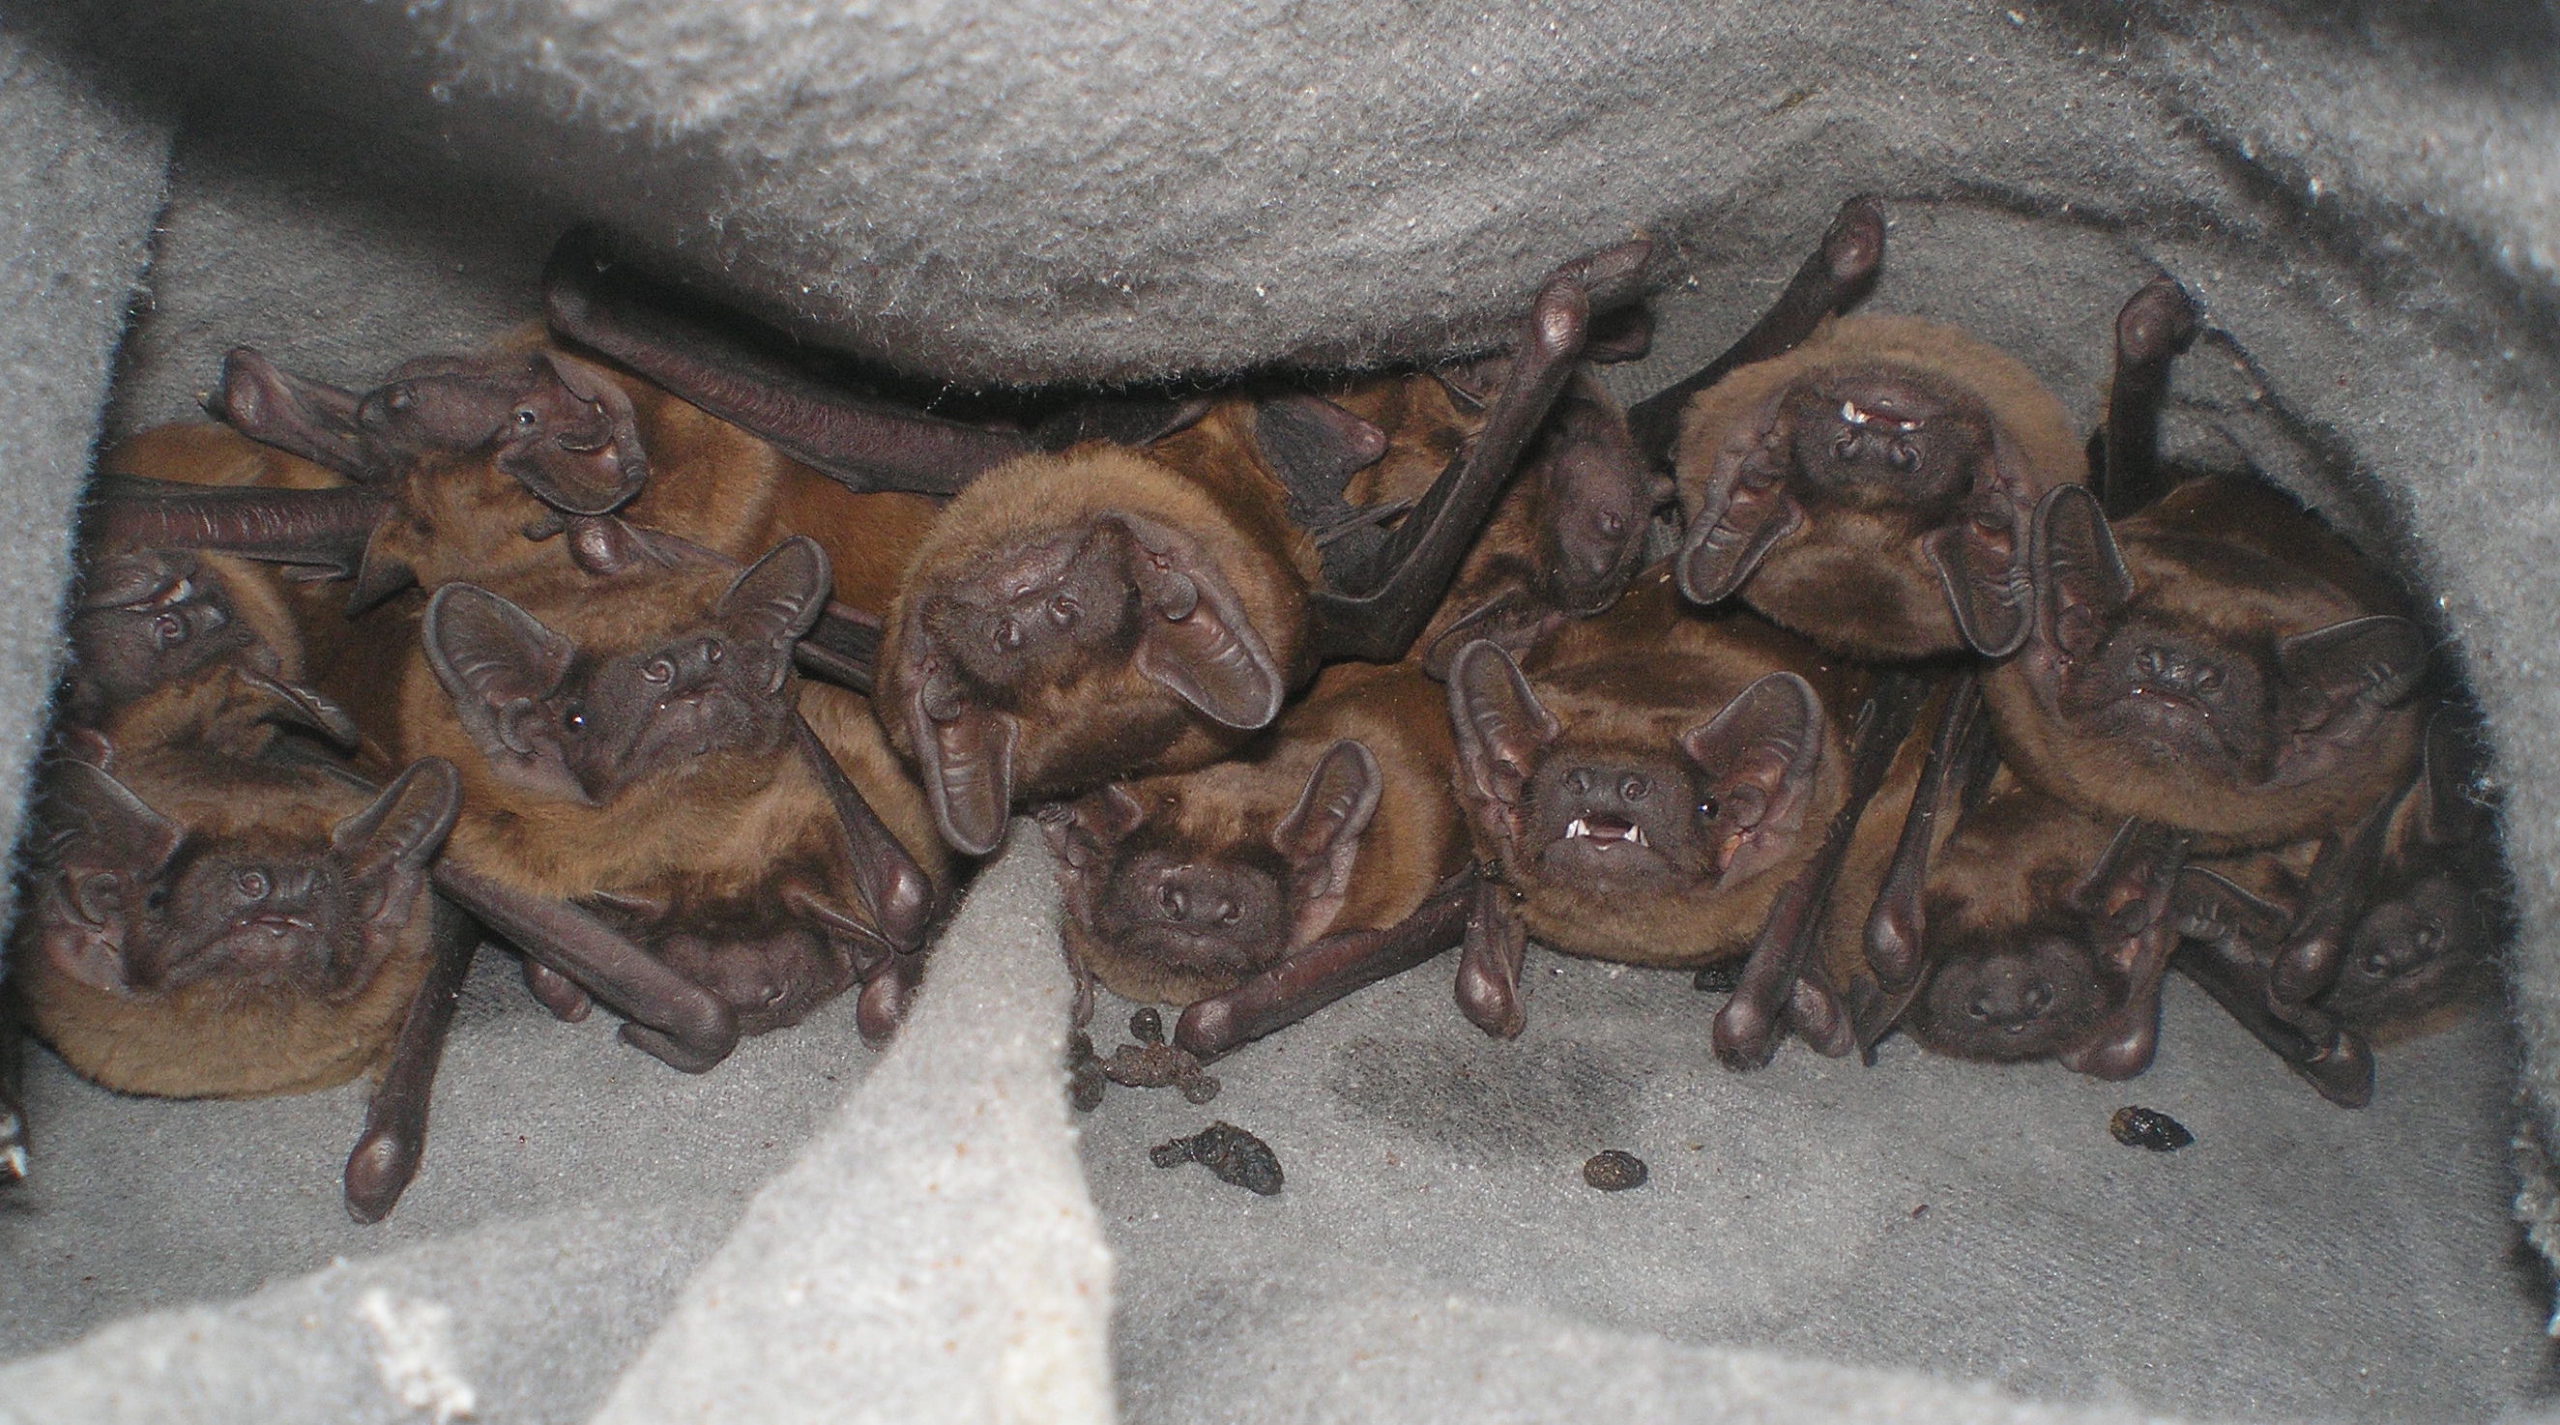 Bat colonies collector  |  Повідомити нам про колонію кажанів